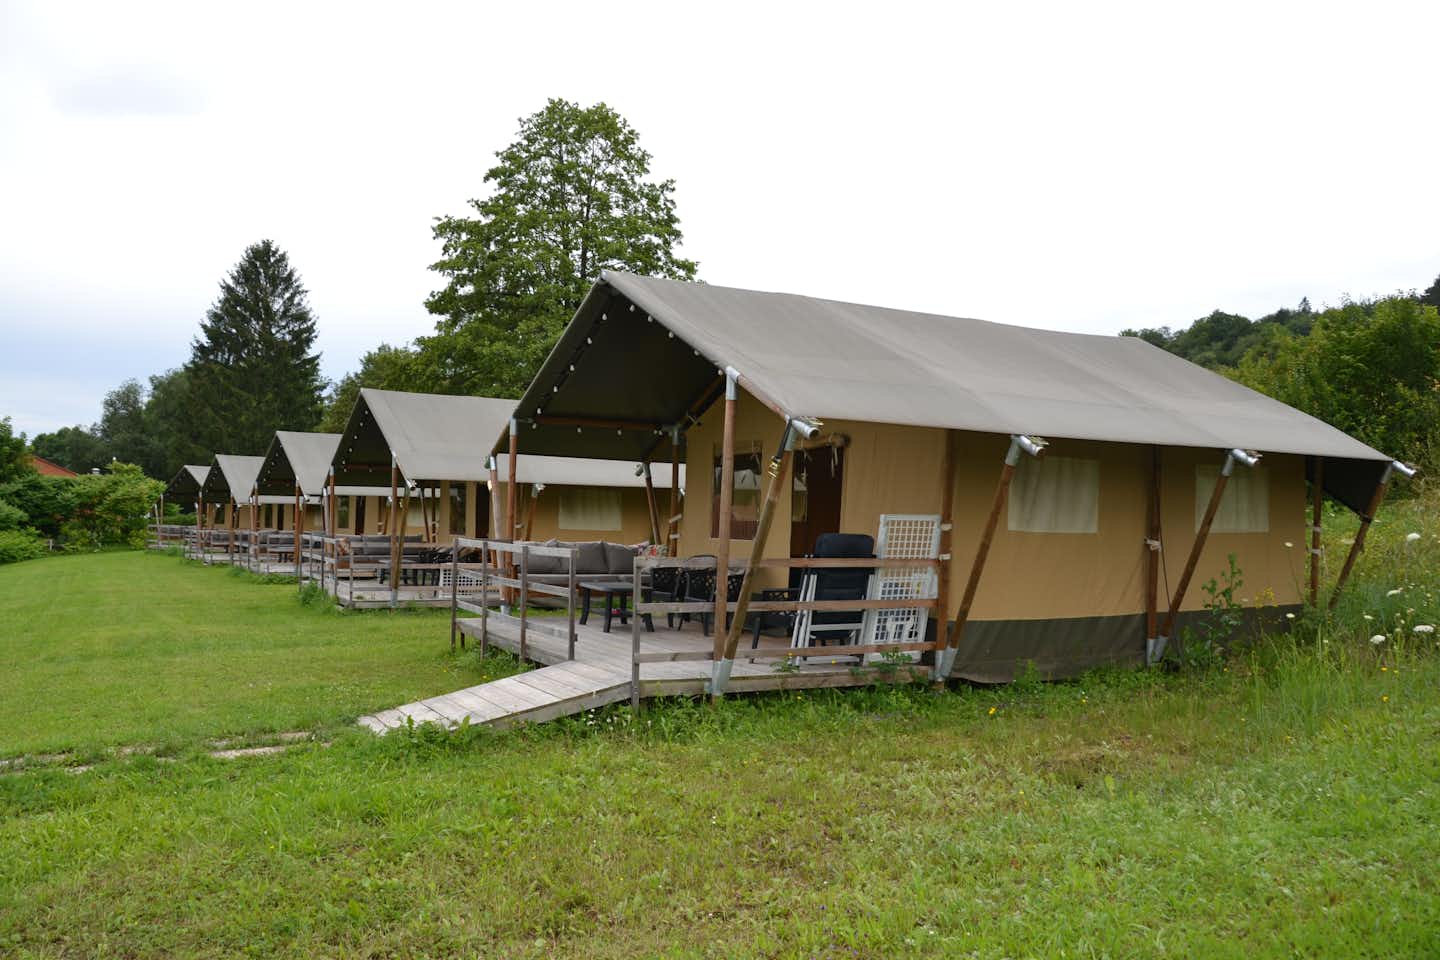 Vodatent @ Camping Walsheim - Glamping-Zelte auf dem Campingplatz